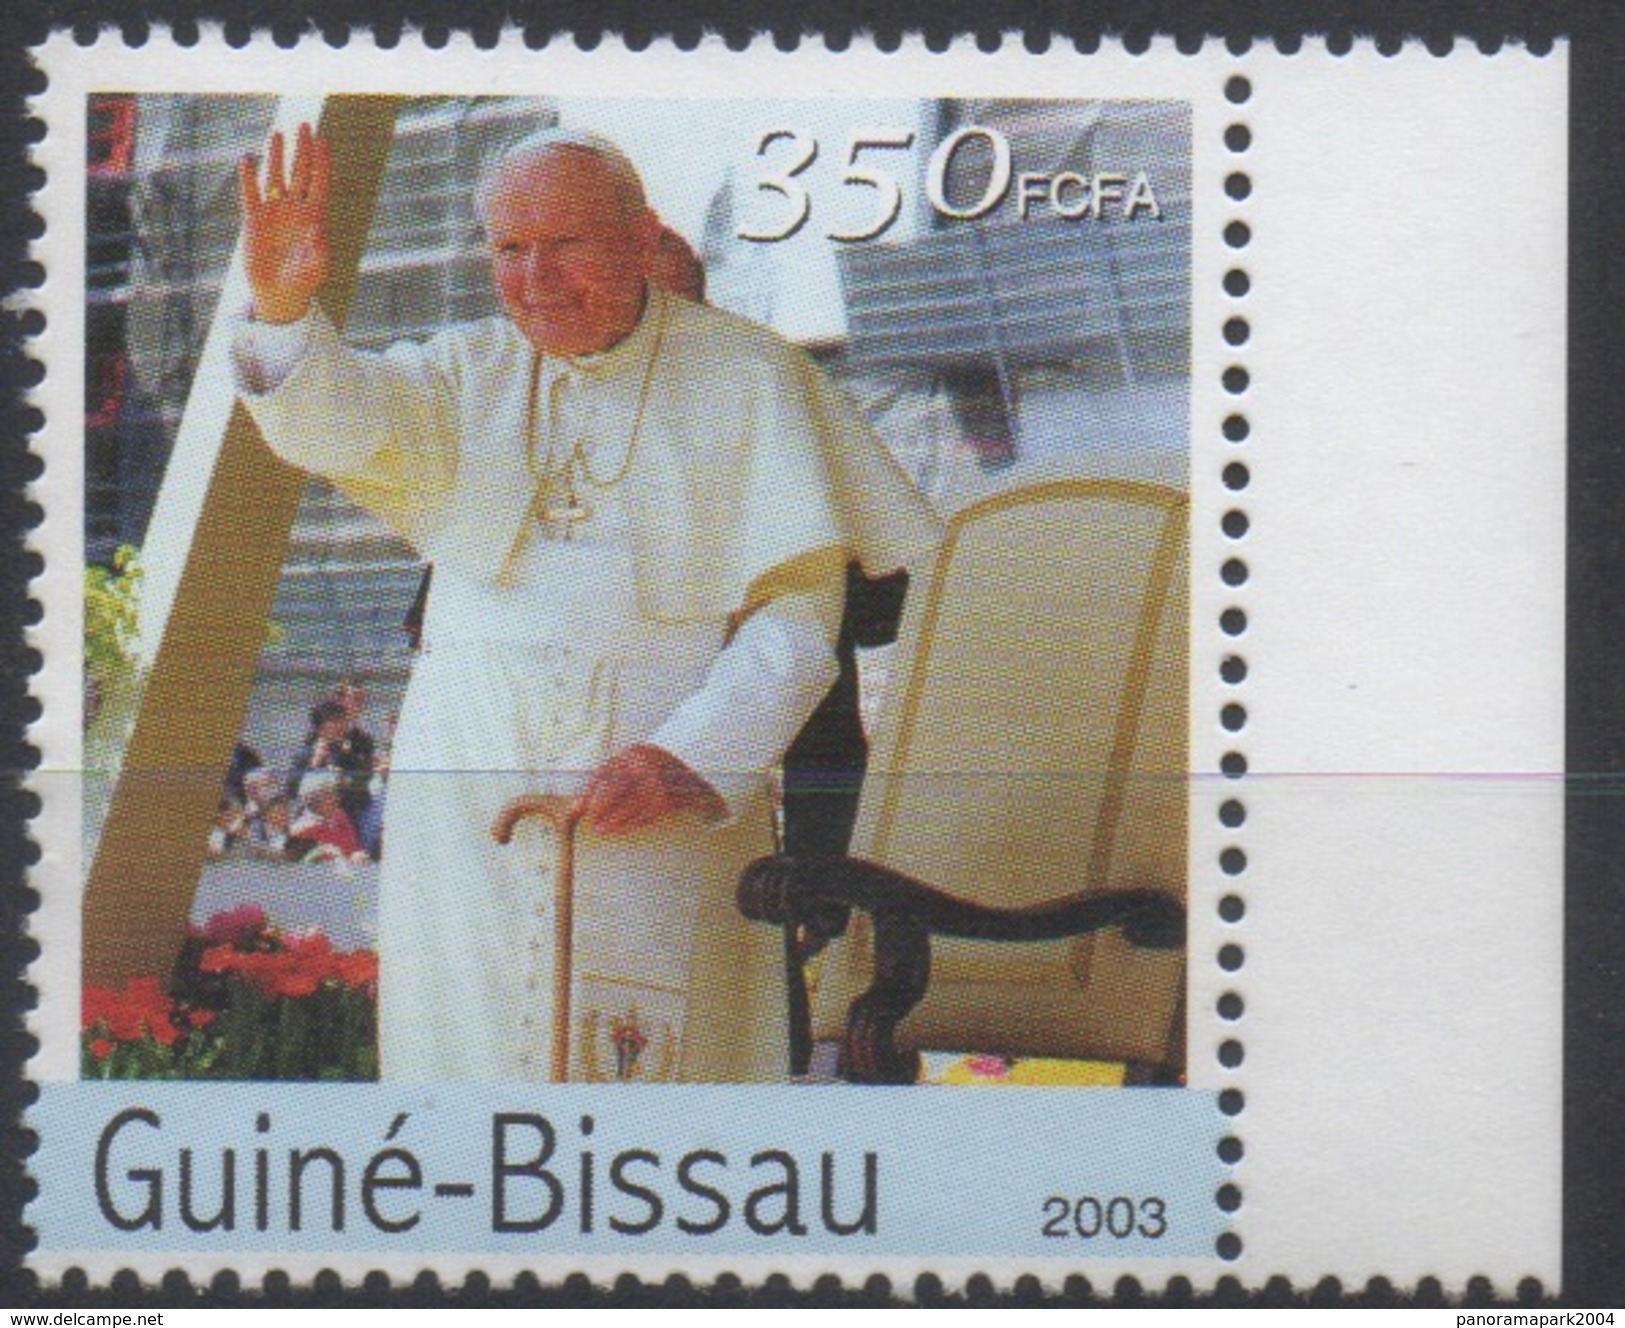 Guiné-Bissau Guinea Guinée Bissau 2003 Mi. 2614 Pape Pope Papst John Paul II Jean Paul Johannes Paul Religion SCARCE ! - Päpste